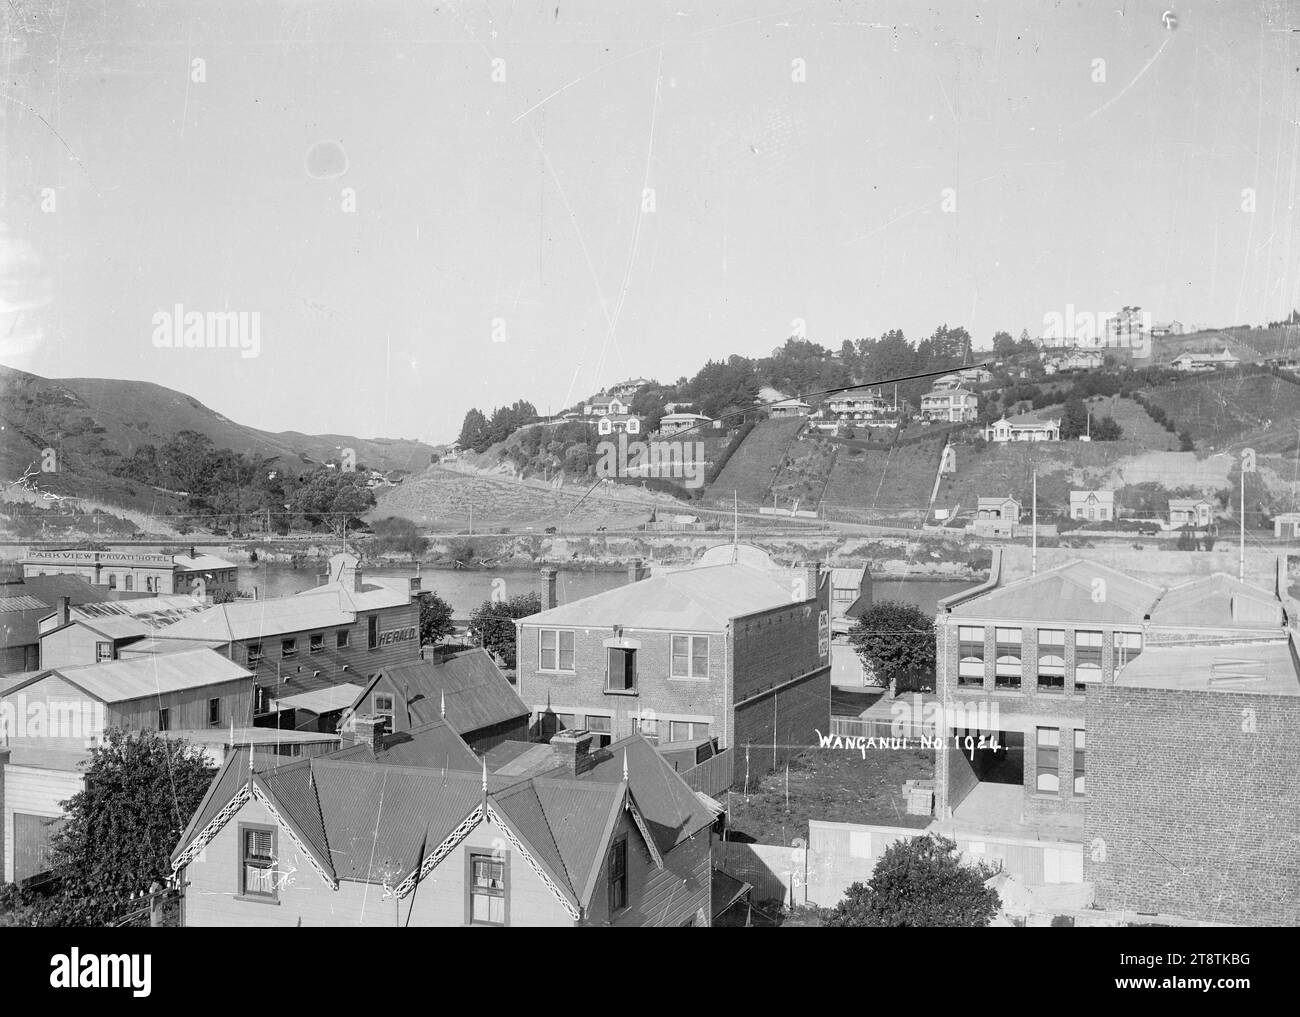 Vue de Wanganui, Nouvelle-Zélande vue sur le quartier central des affaires vers Durie Hill, vue sur le quartier central des affaires de Wanganui, Nouvelle-Zélande, avec Durie Hill de l'autre côté de la rivière Whanganui Banque D'Images